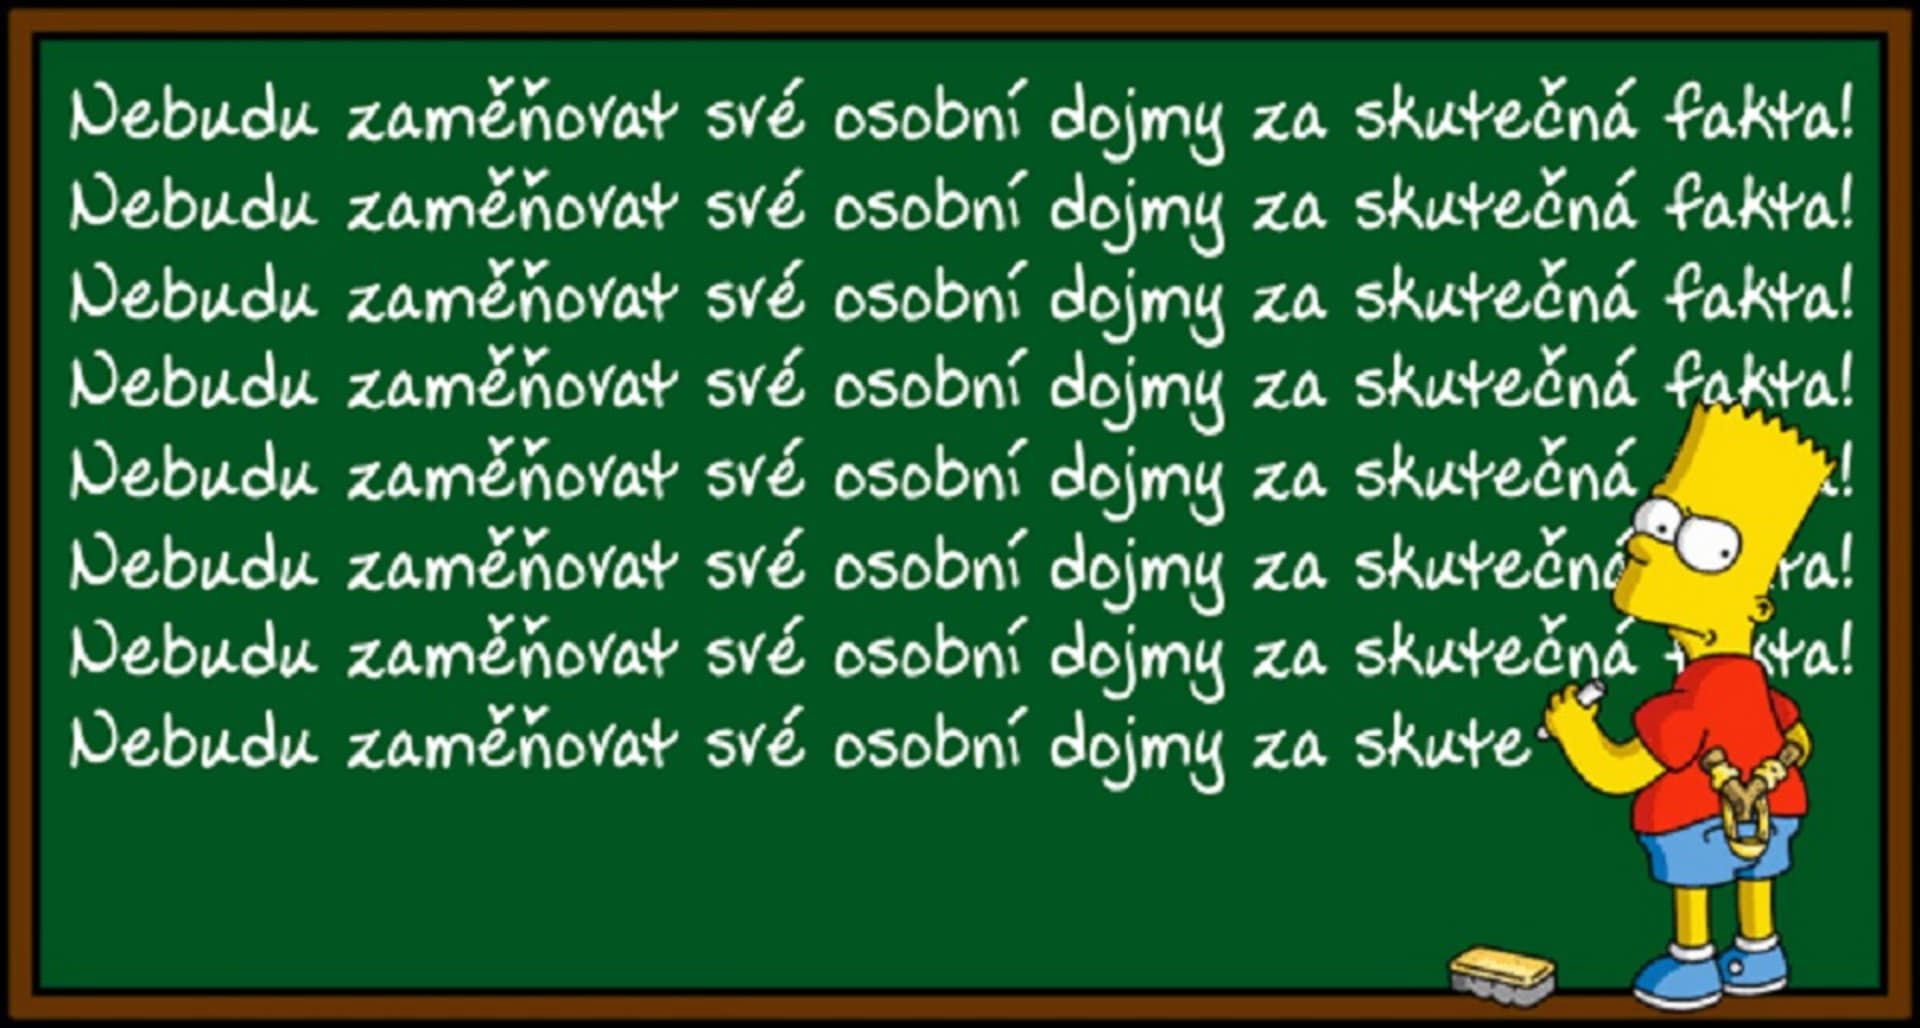 I Bart si občas plete pojmy s dojmy :)